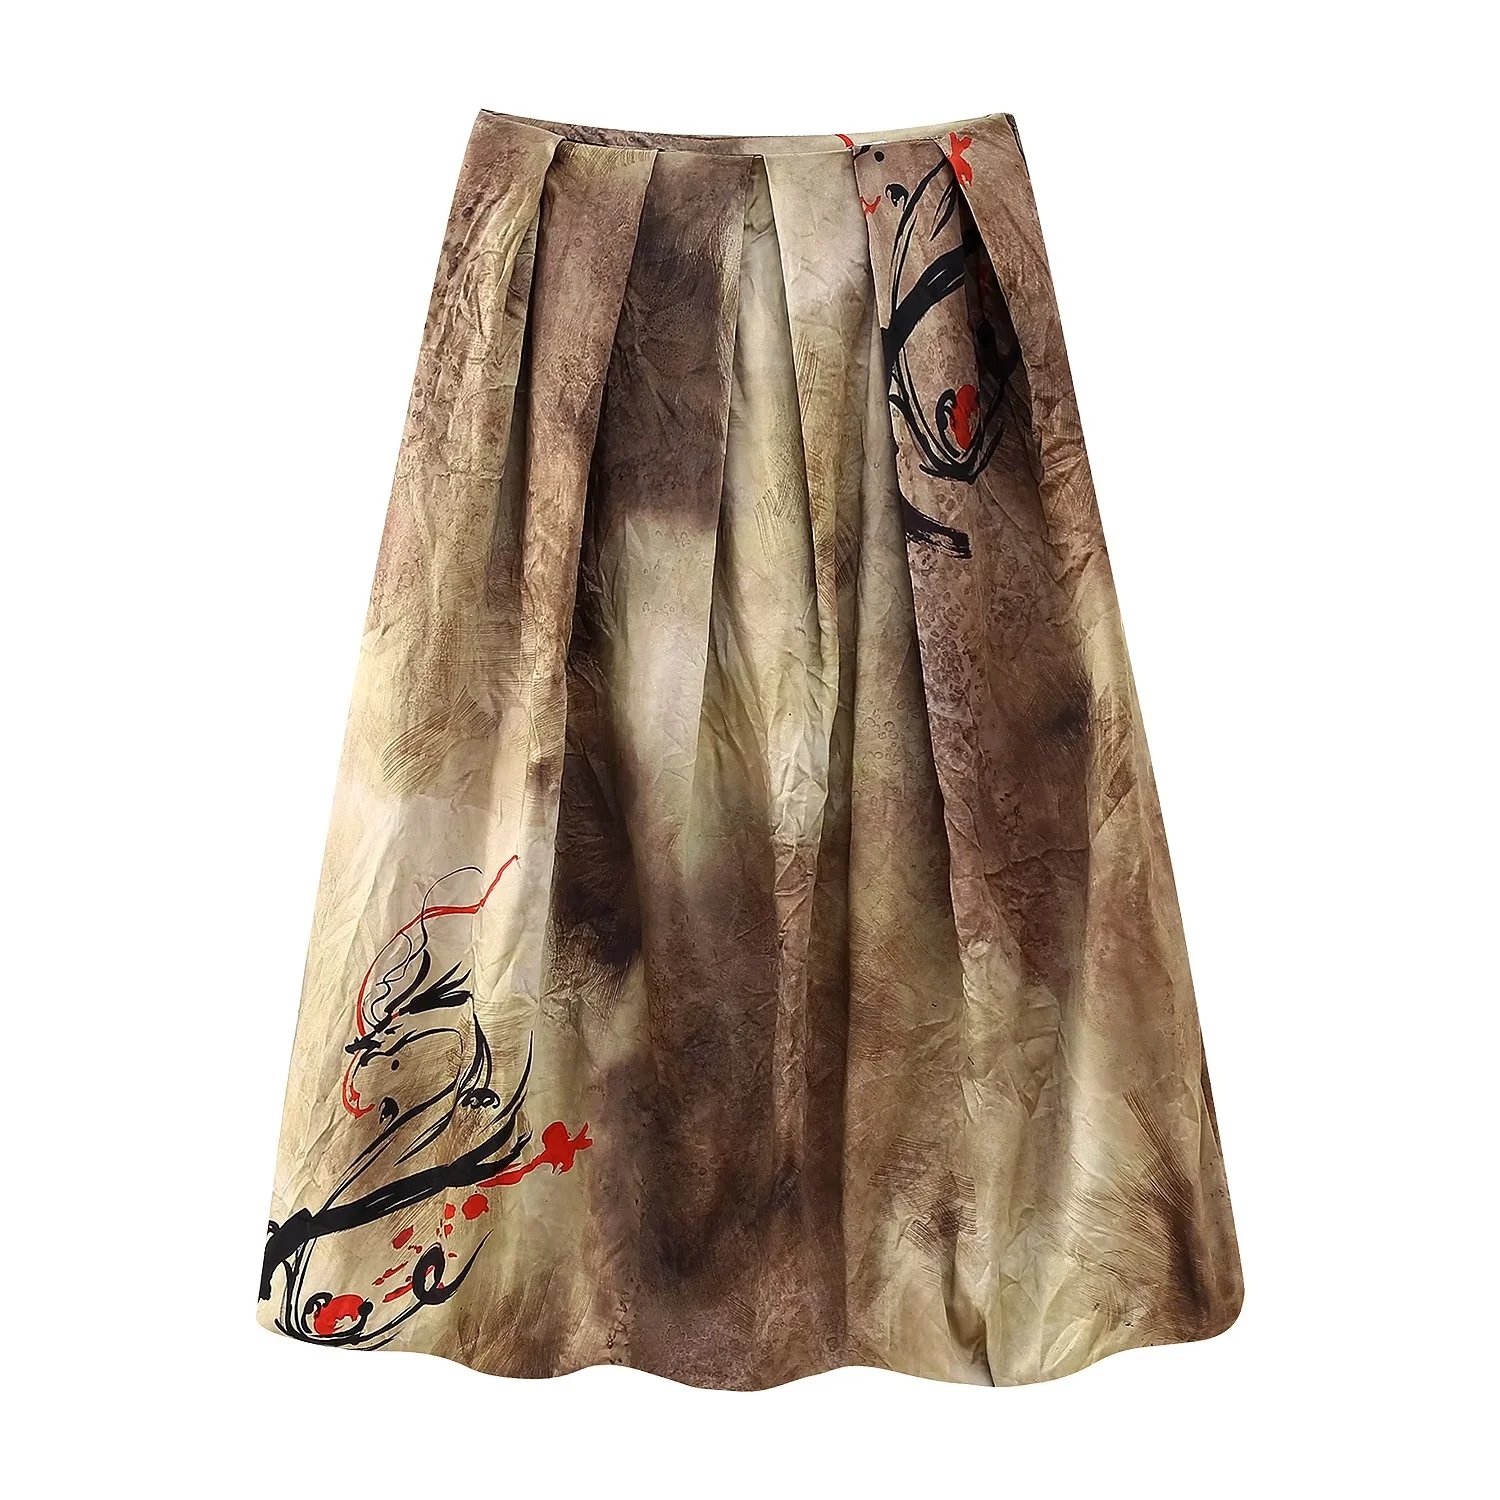 Fashion Brown Polyester Printed Skirt,Skirts